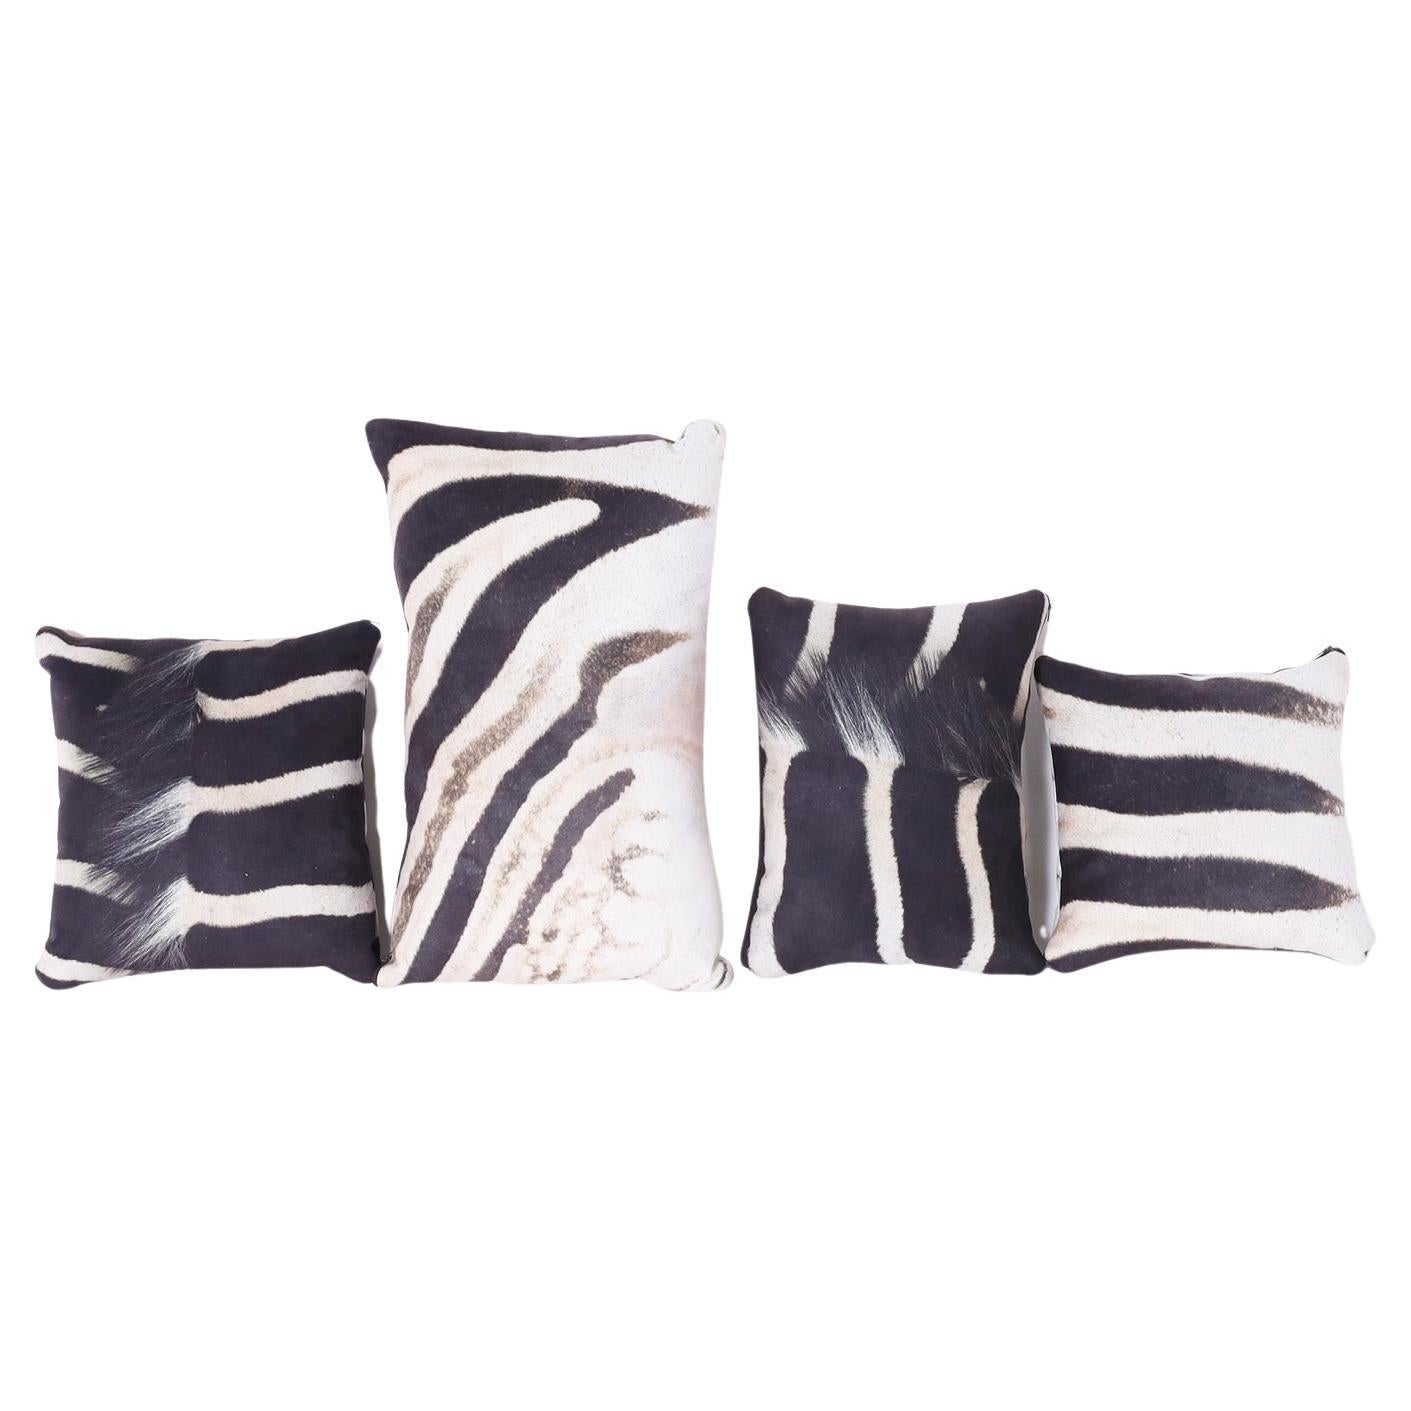 *Zwei Kissen im British Colonial Stil mit Zebradruck, Einzelpreise